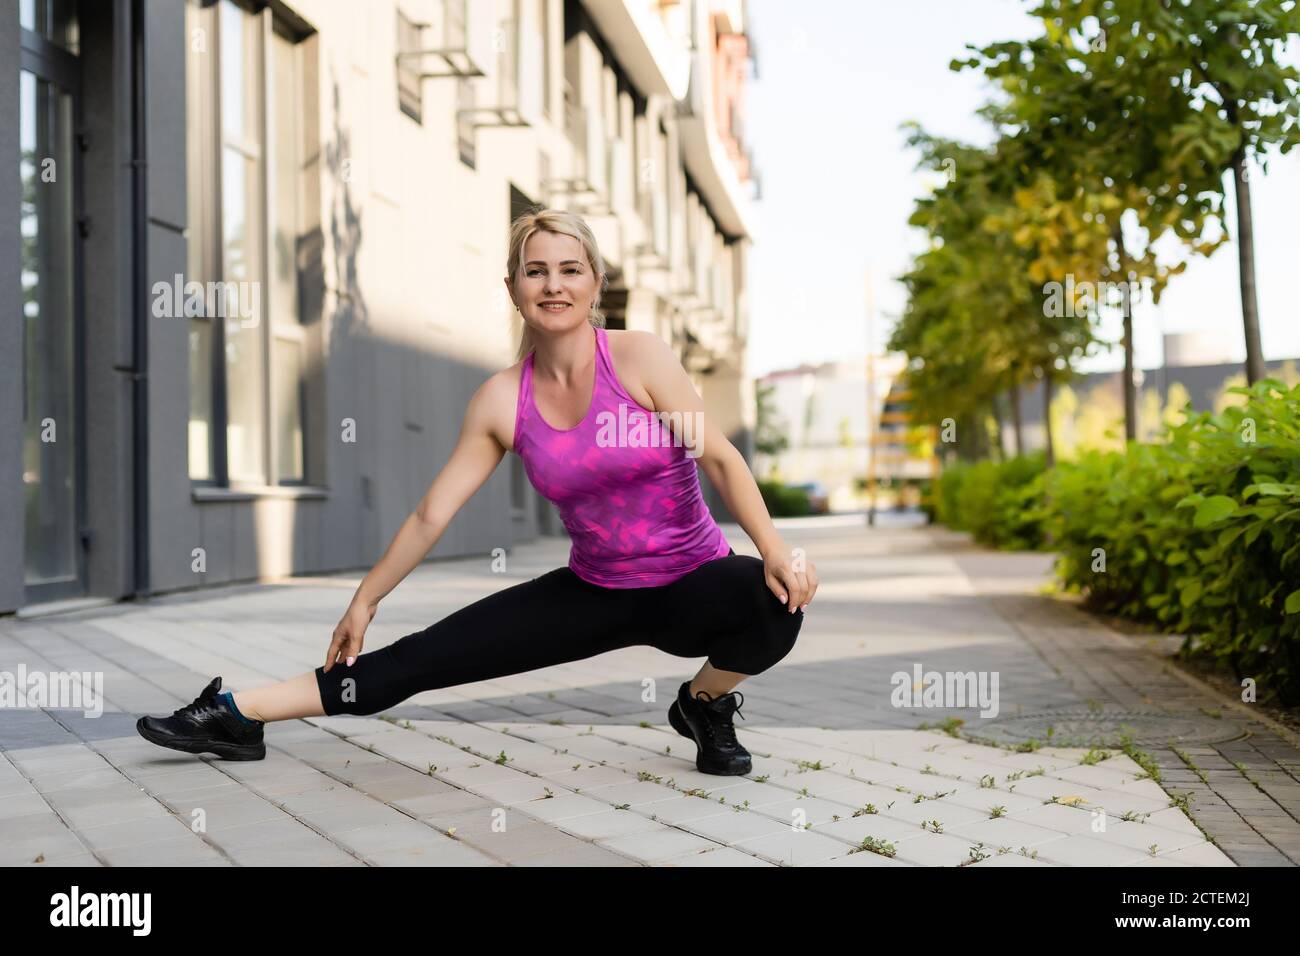 Deporte mujer de fitness de moda ropa deportiva hacer yoga ejercicio de  fitness en la calle de la ciudad sobre fondo gris concreto. Ropa deportiva  al aire libre y Fotografía de stock 